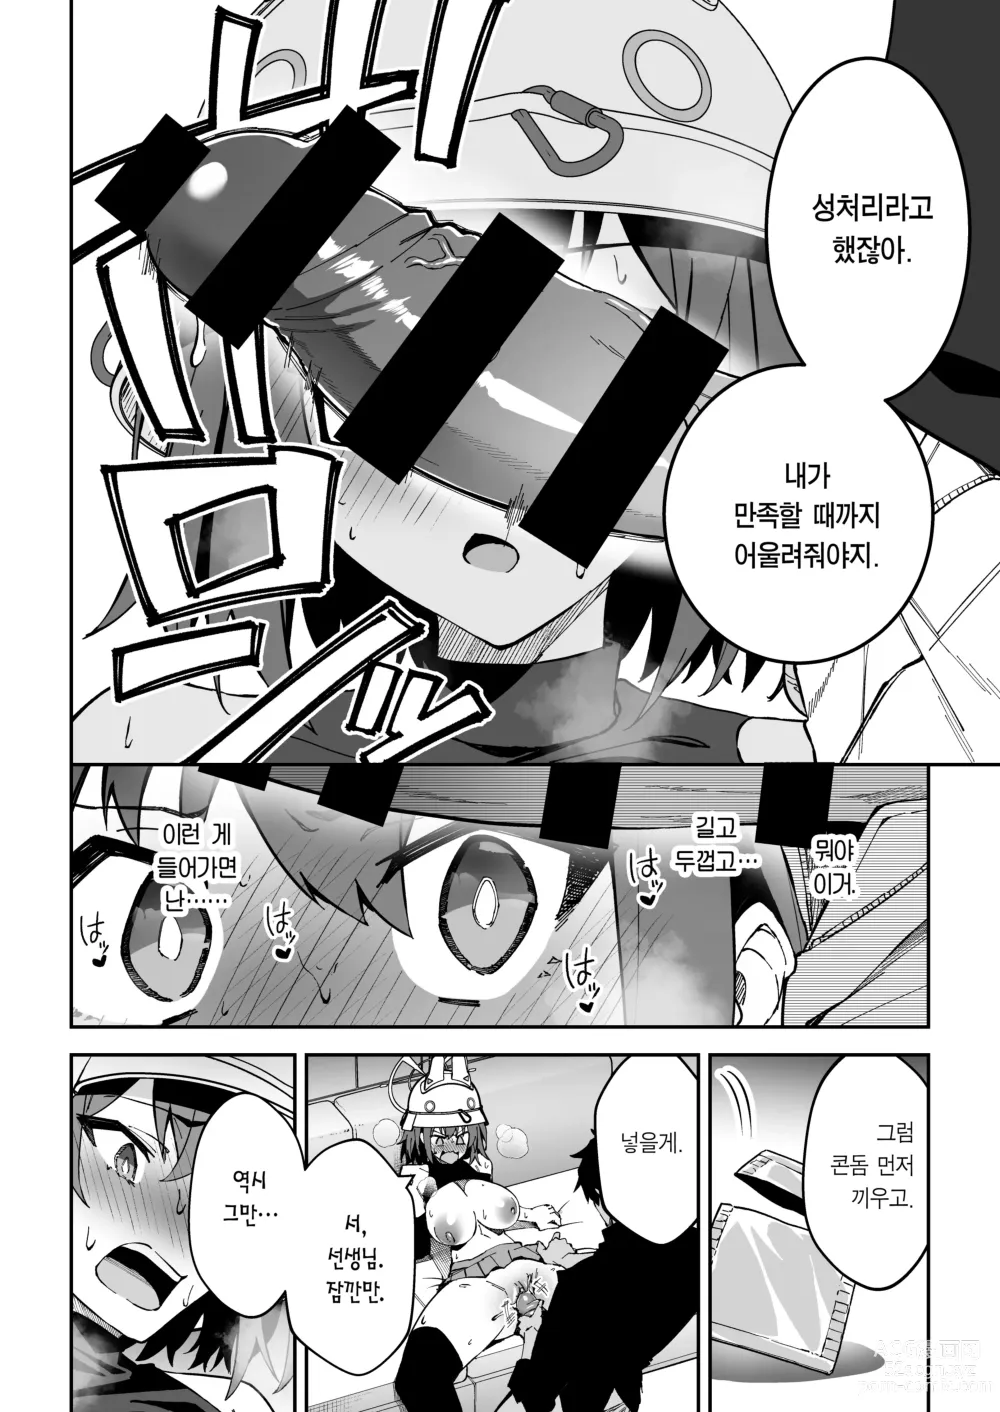 Page 13 of doujinshi 욕정 토끼의 식량 조달 작전